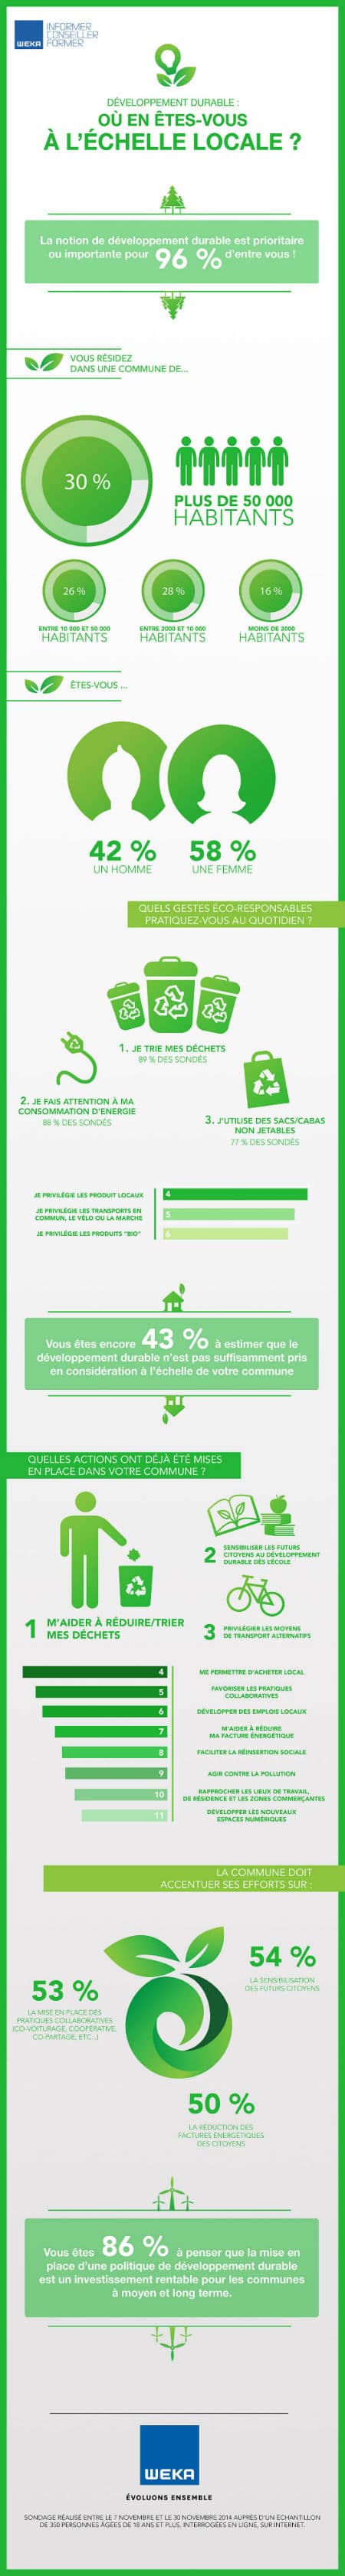 infographie-resultats-du-sondage-sur-le-developpement-durable-a-l-echelle-locale